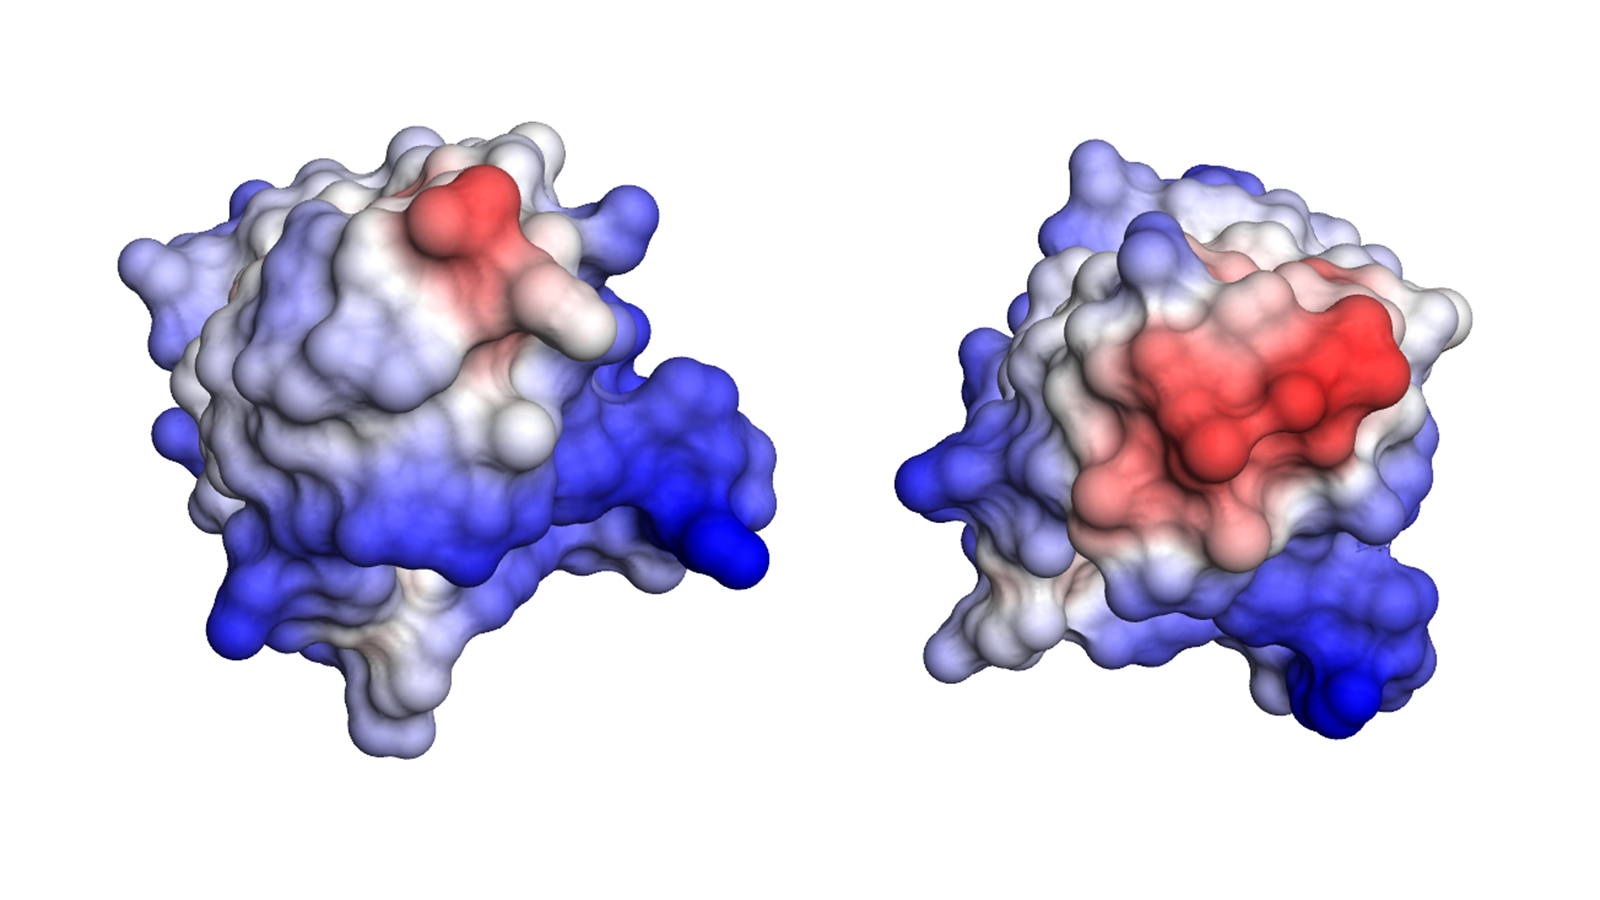 Im Vergleich zum normalen Antikörperfragment (links) besitzt das der Patientin (rechts) einen größeren wasserabweisenden (hydrophoben) Bereich (rot). Die geringere Stabilität kann zur Bildung der gefährlichen Amyloid-Fibrillen führen. 